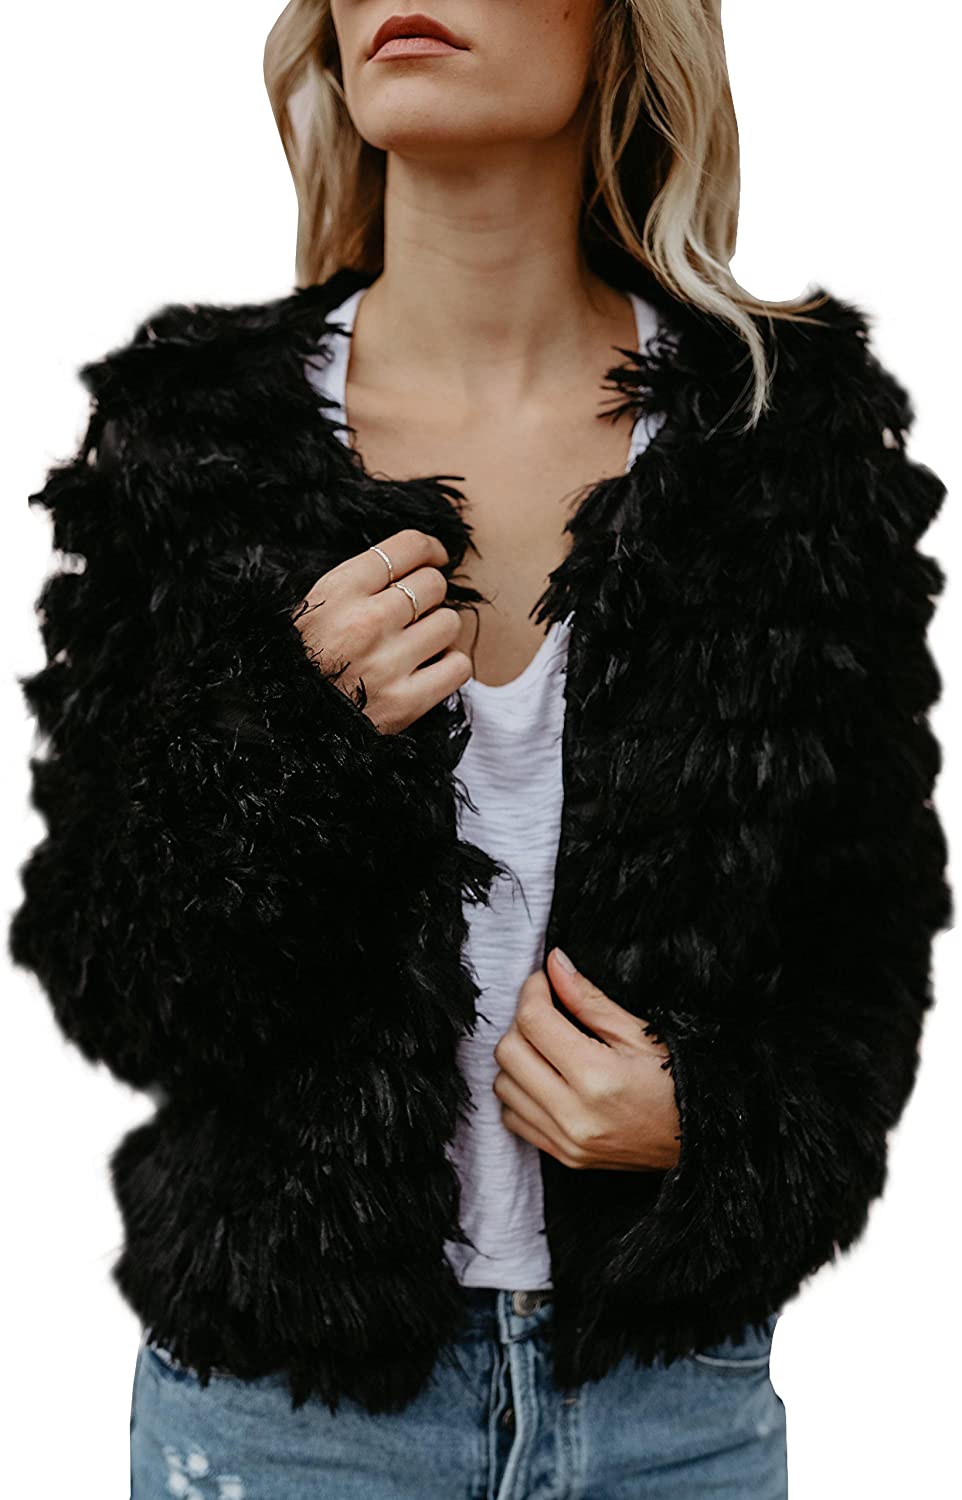 Ramoug Womens Winter Outwear Faux Fur Long Sleeve Short Jacket Parka Coat Open Front Cardigans